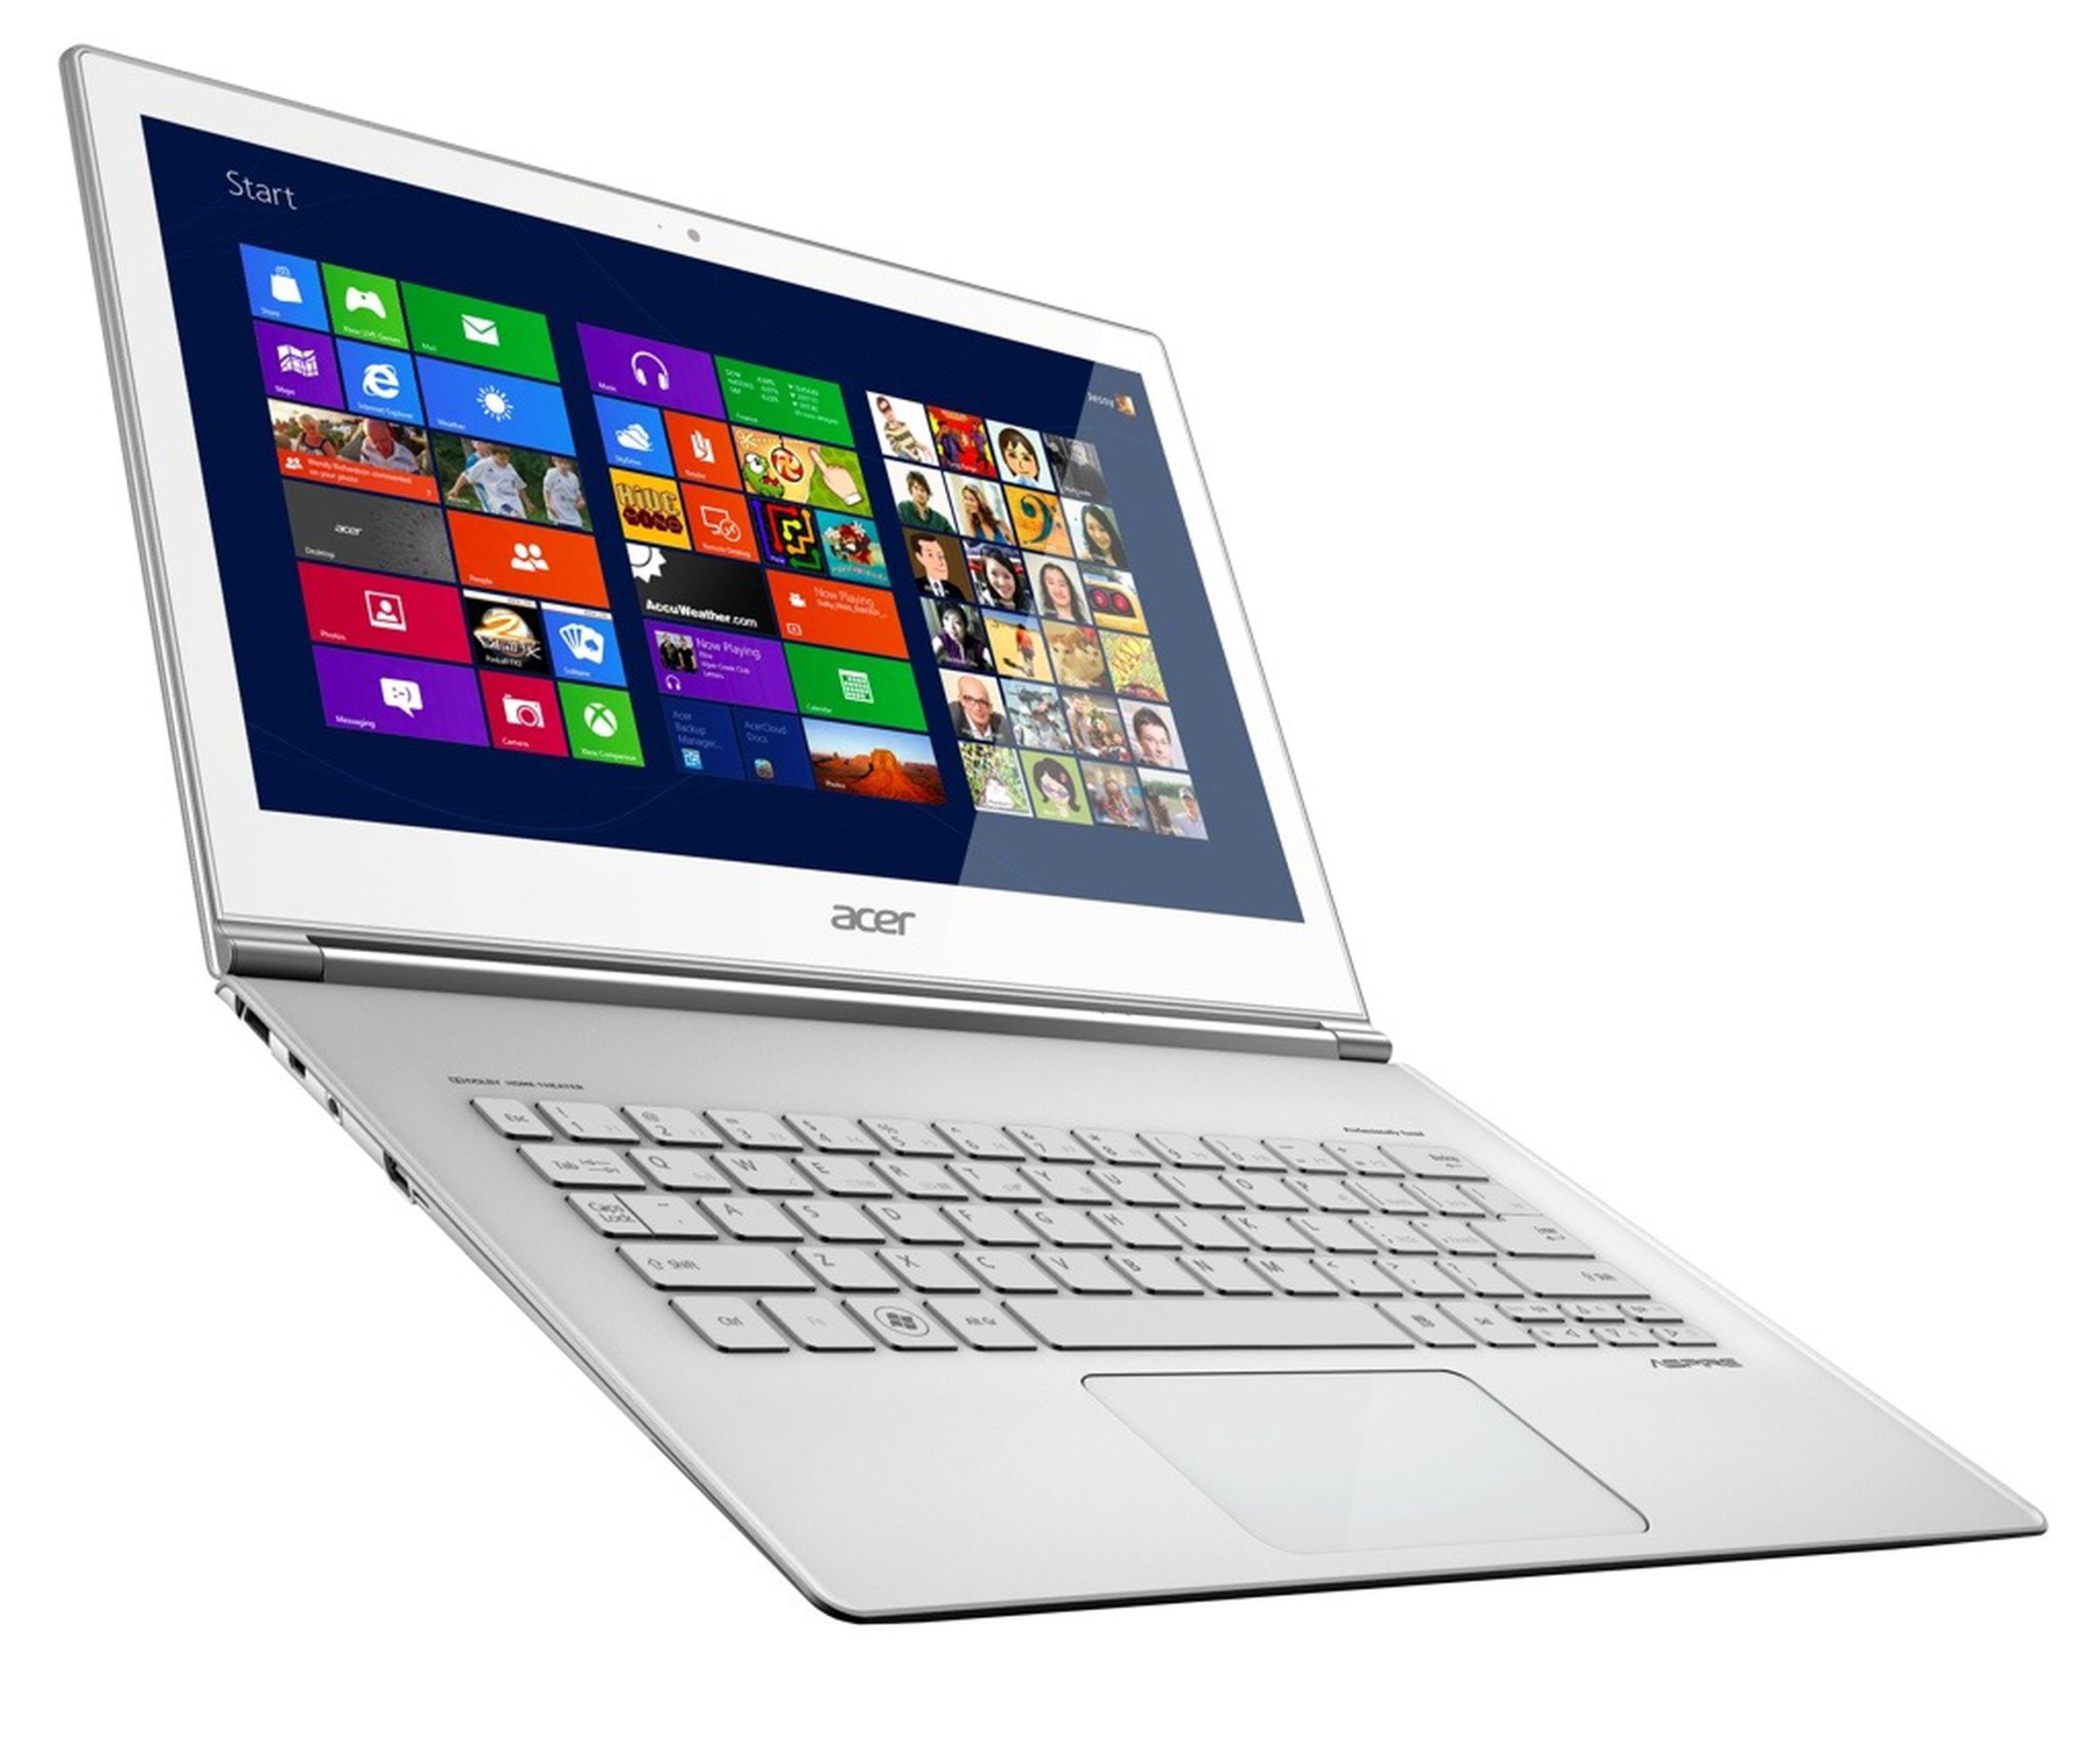 Acer Aspire S7 Windows 8 ultrabooks